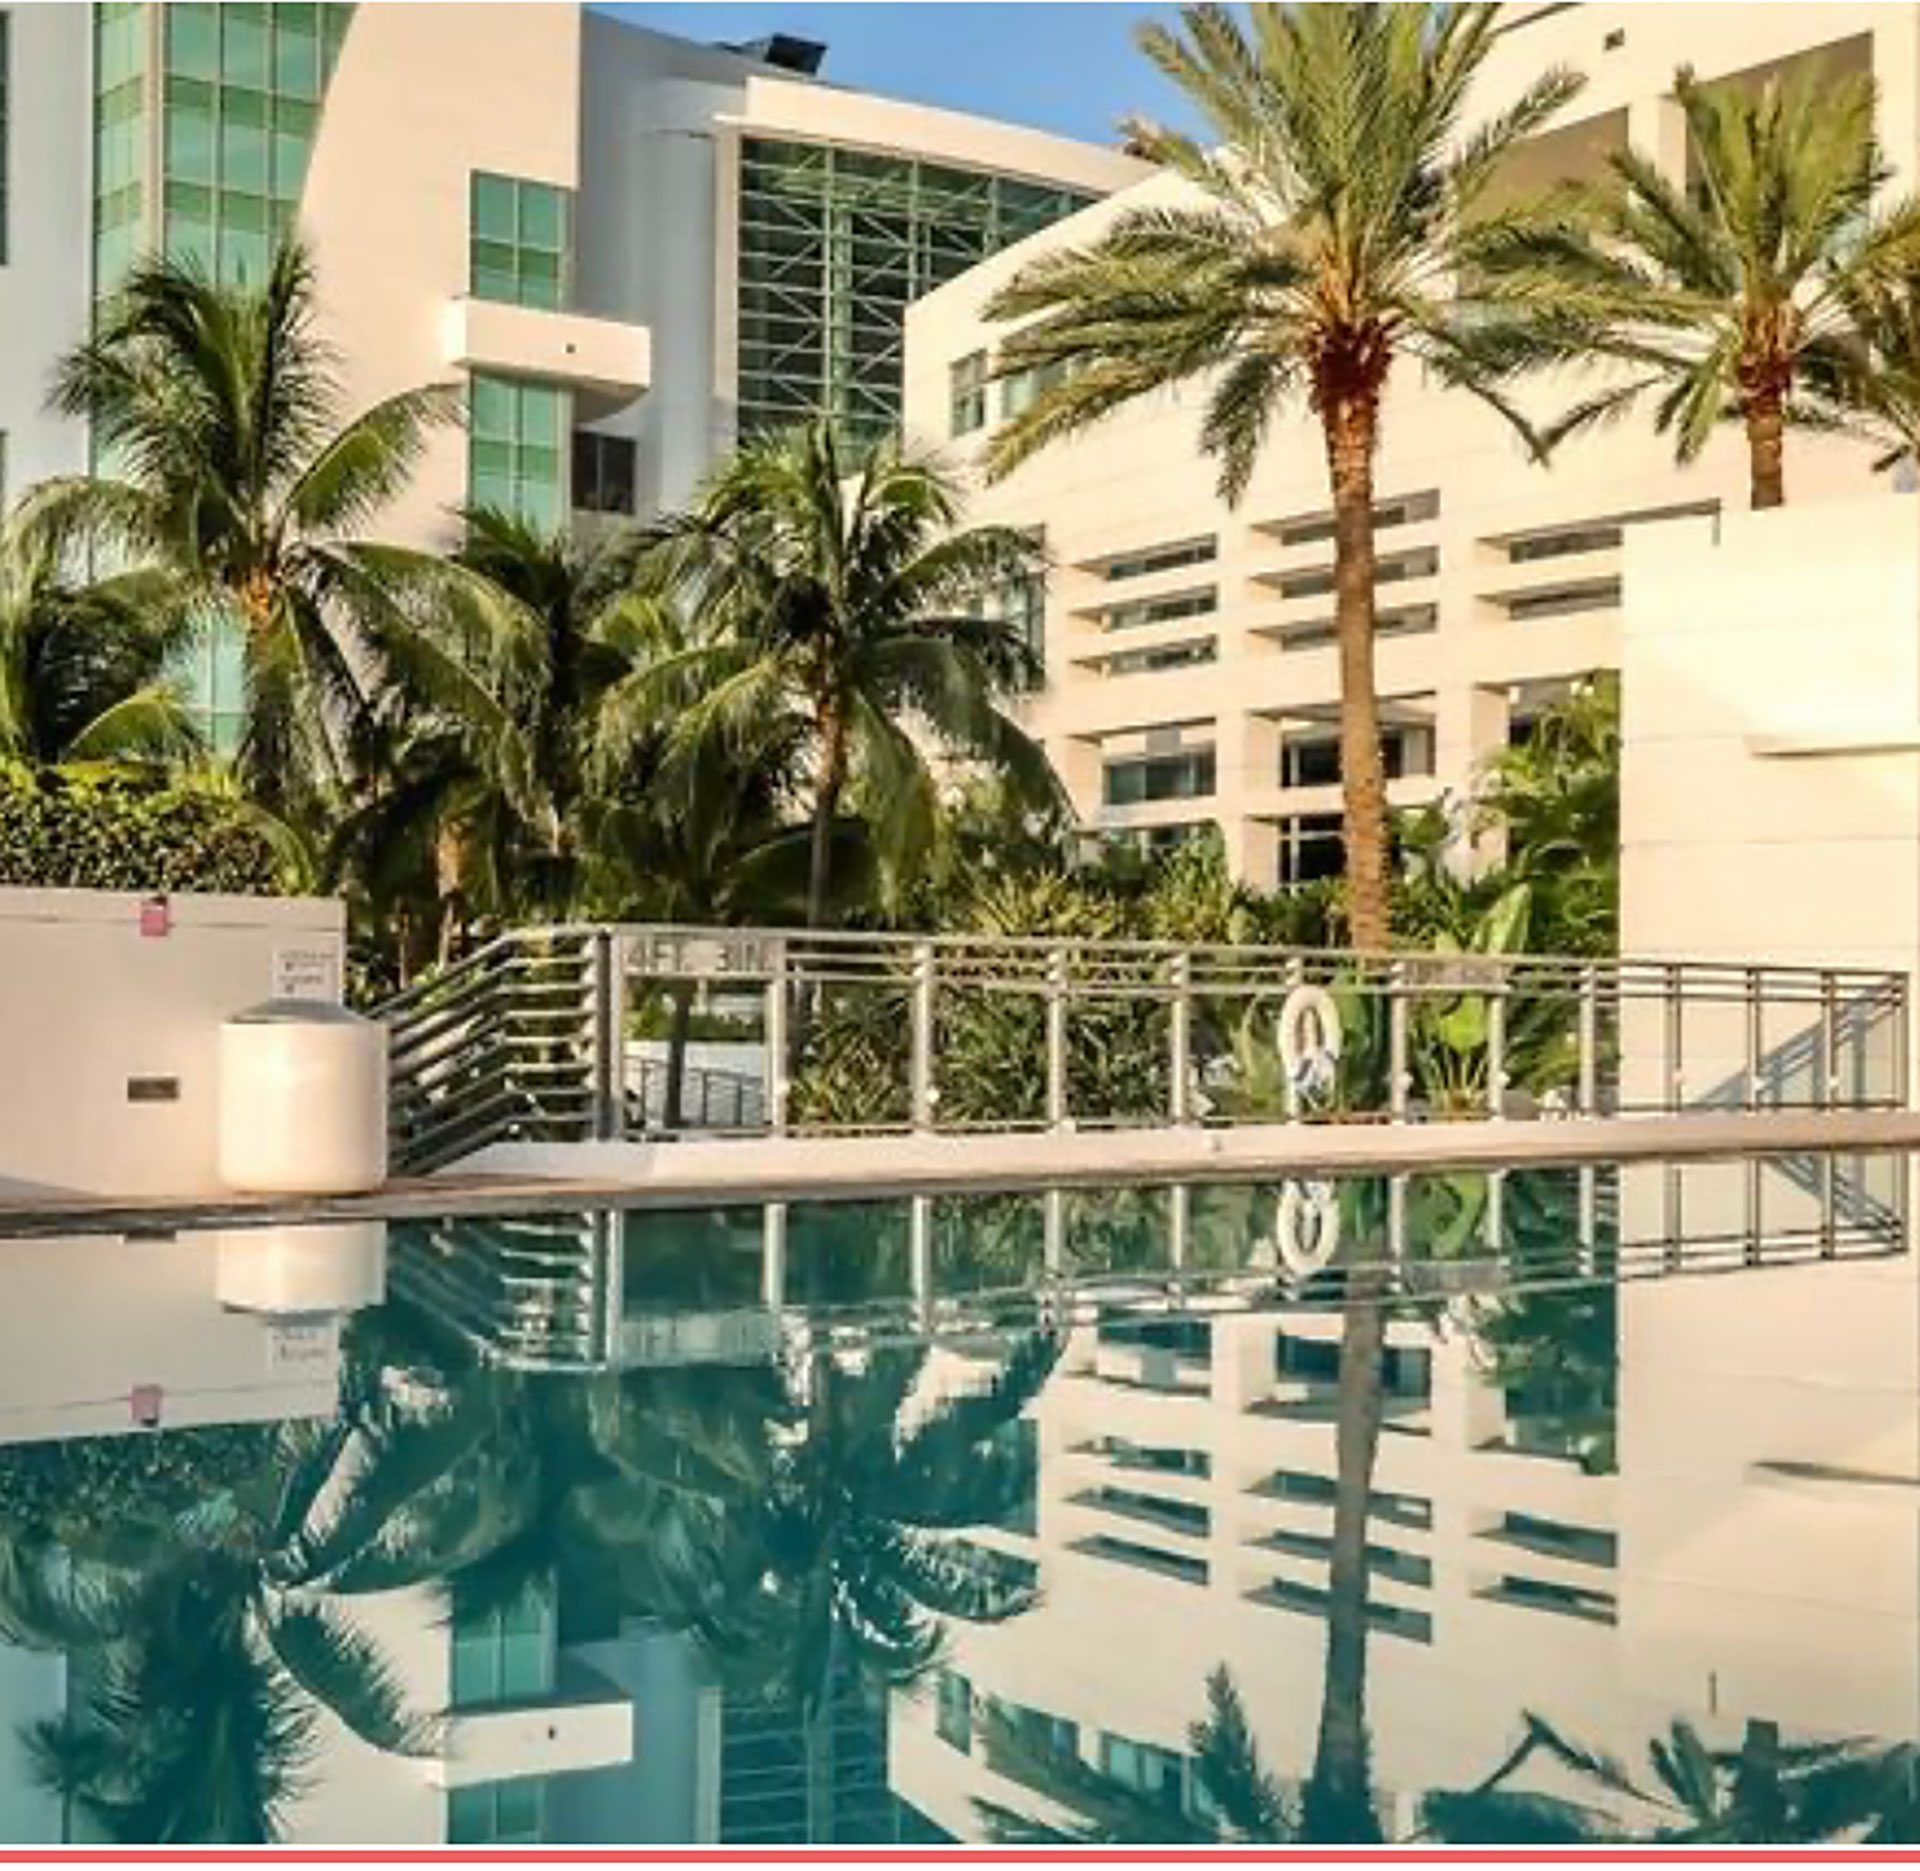 El Diplomat Beach Resort está ubicado sobre la playa de Hollywood, en el sur de la Florida